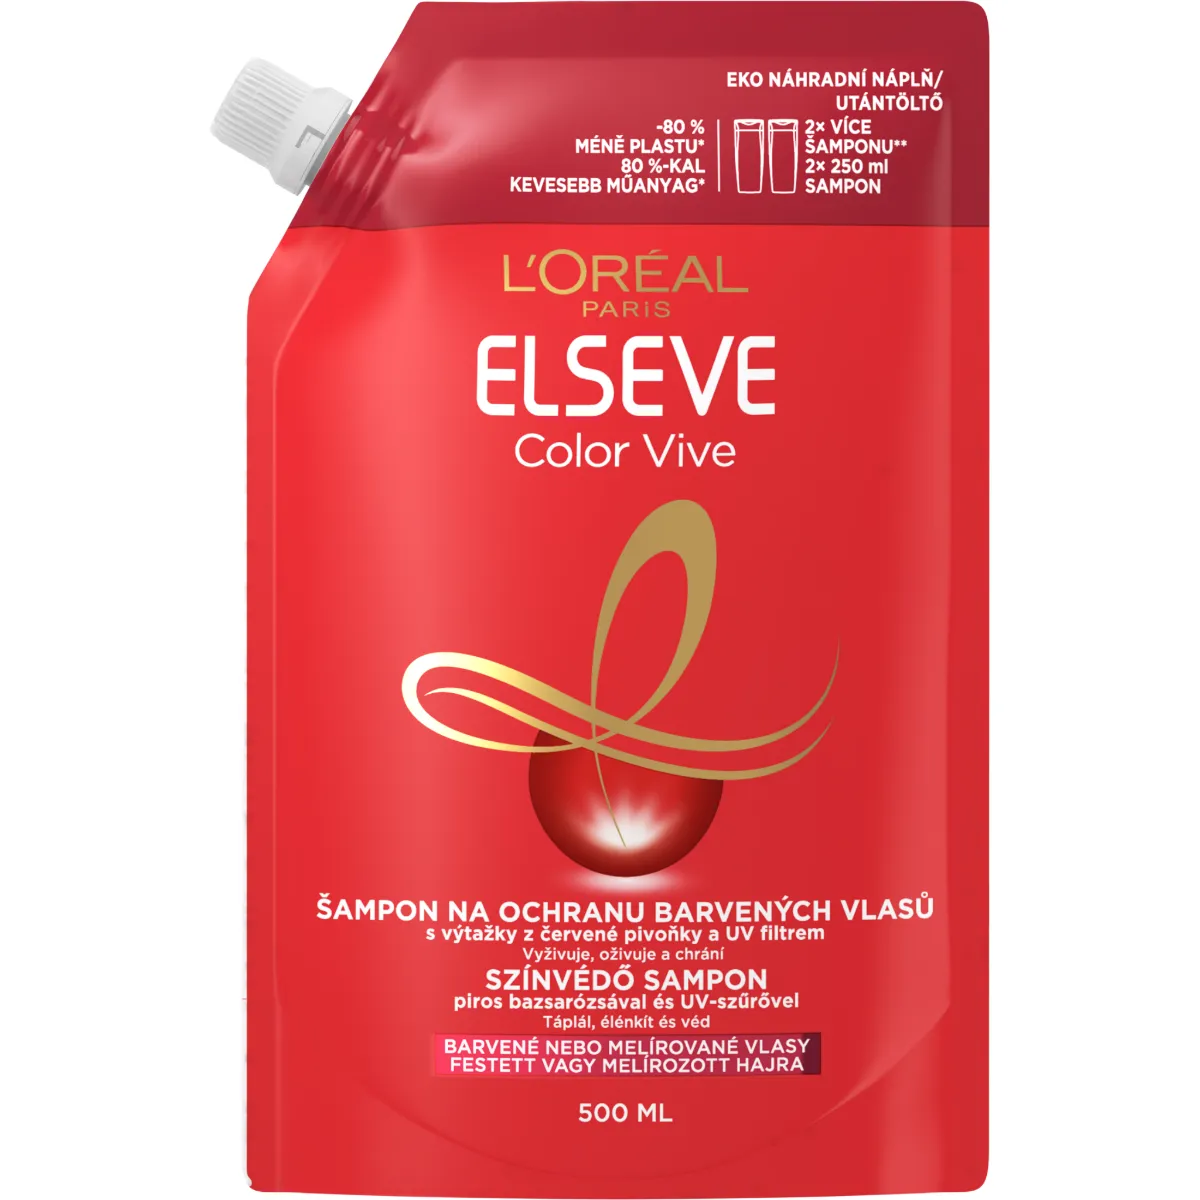 L'Oréal Paris Elseve Color Vive refill šampón pre farbené vlasy 1×500 ml, lesk, hydratácia, výživa a regenerácia vlasov